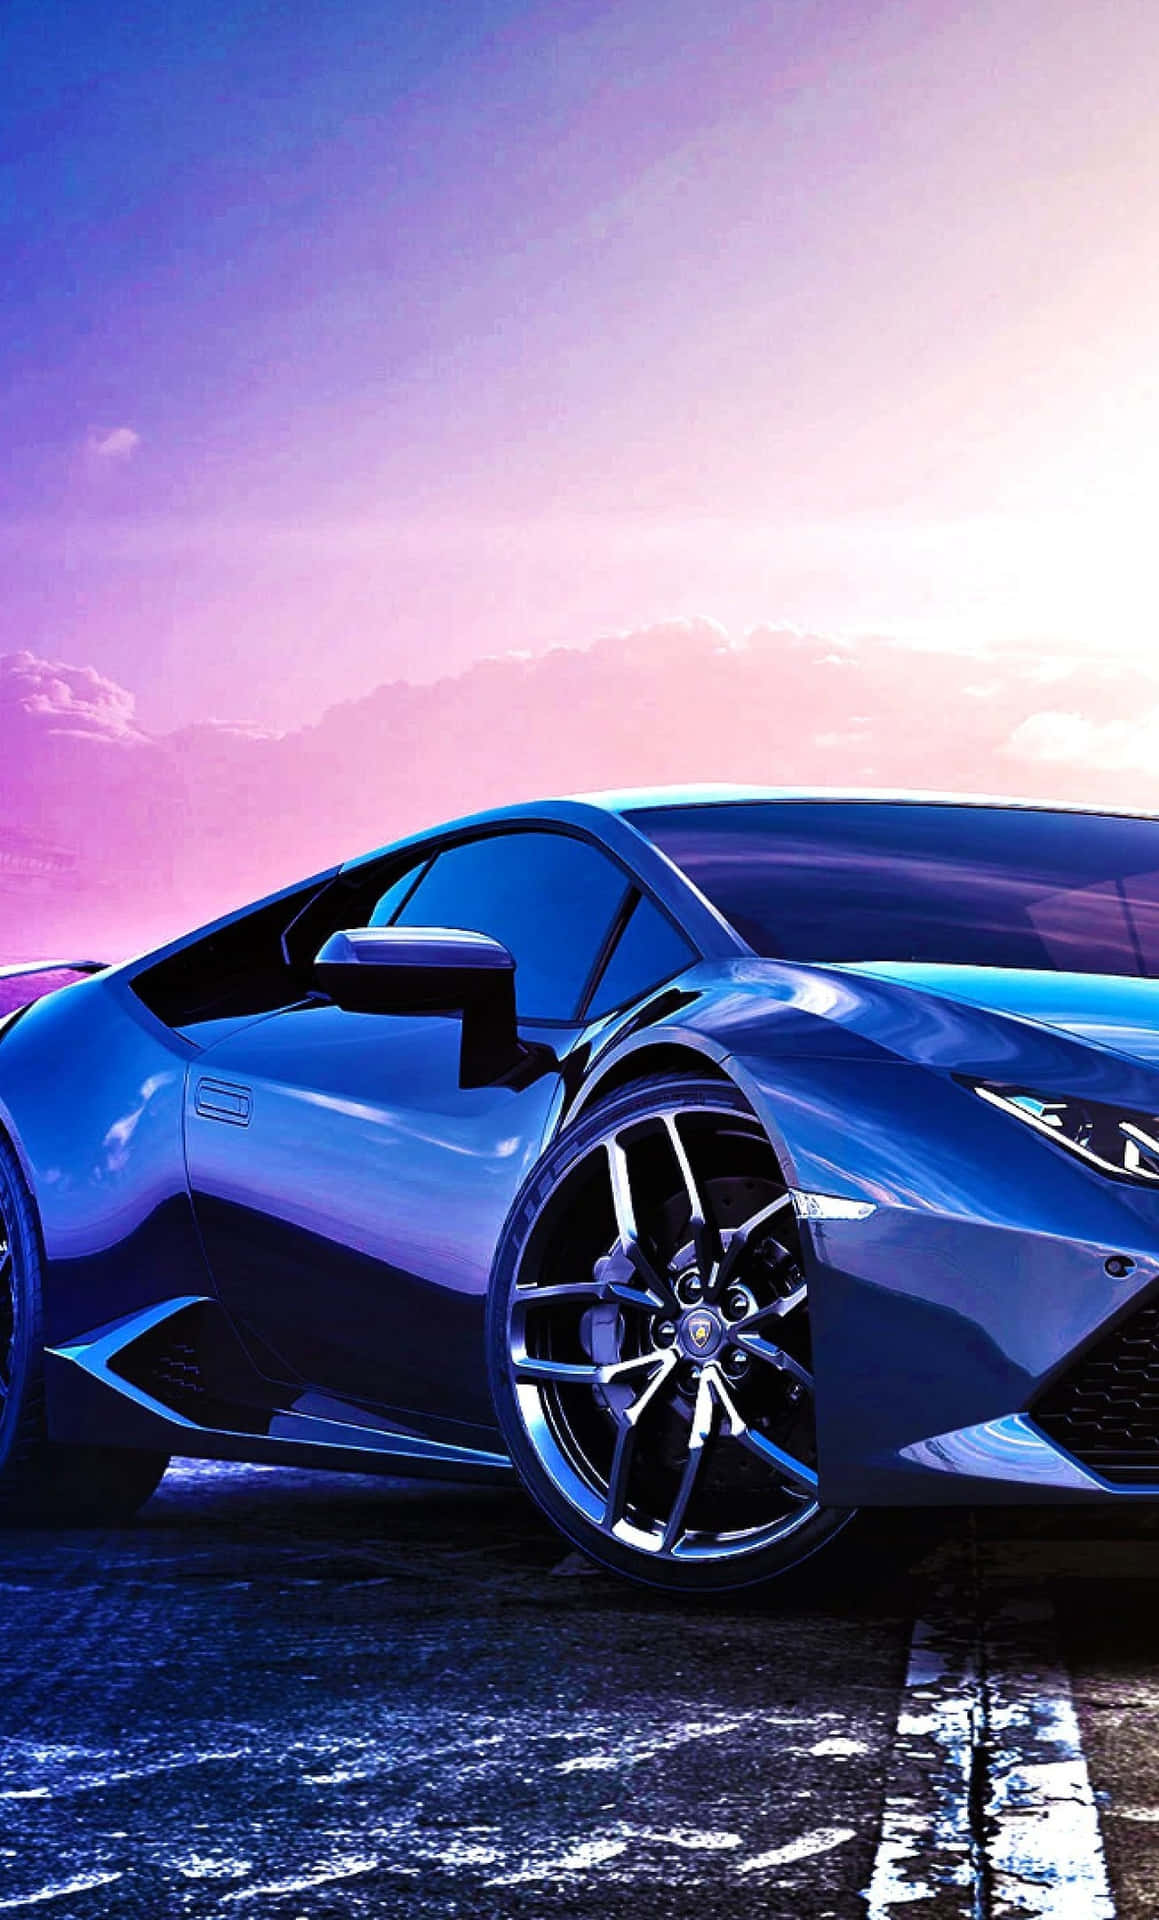 Vergrößereden Wunderschönen Blauen Lamborghini. Wallpaper